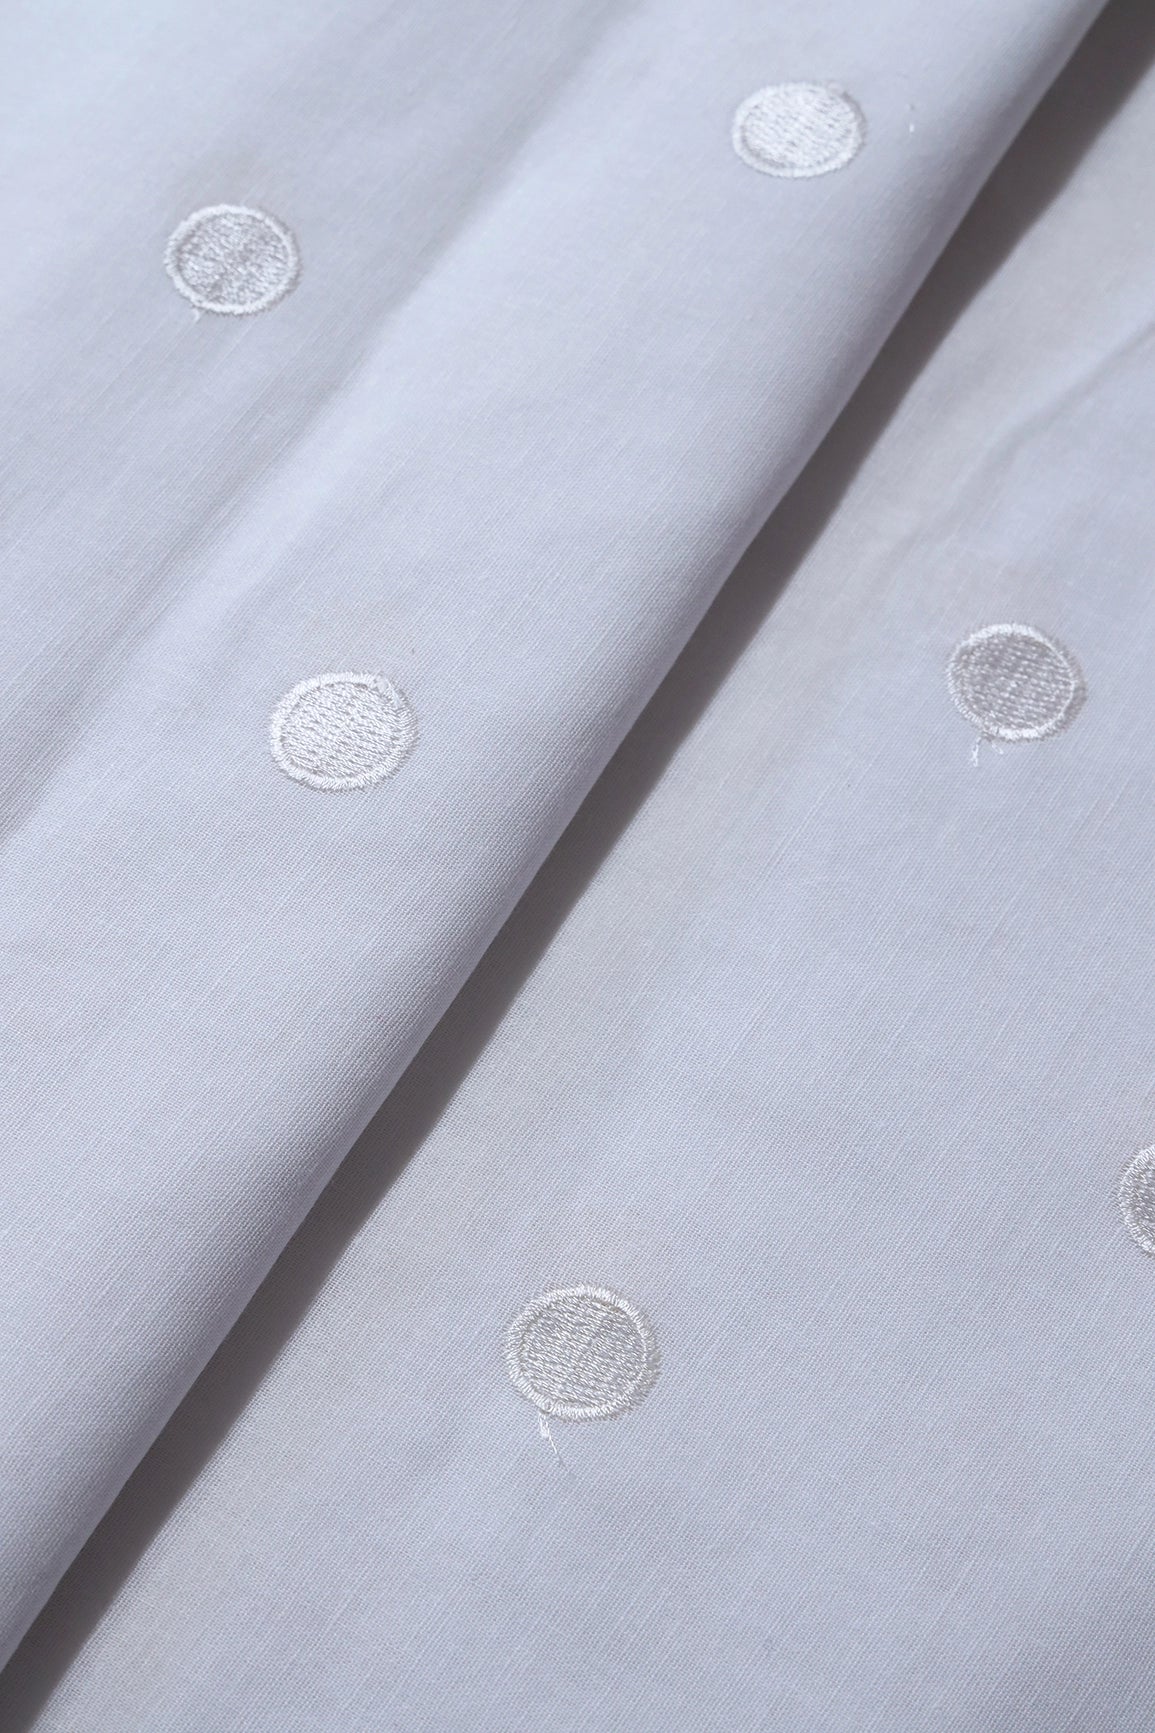 White Thread Polka Embroidery Work On White Organic Cotton Fabric